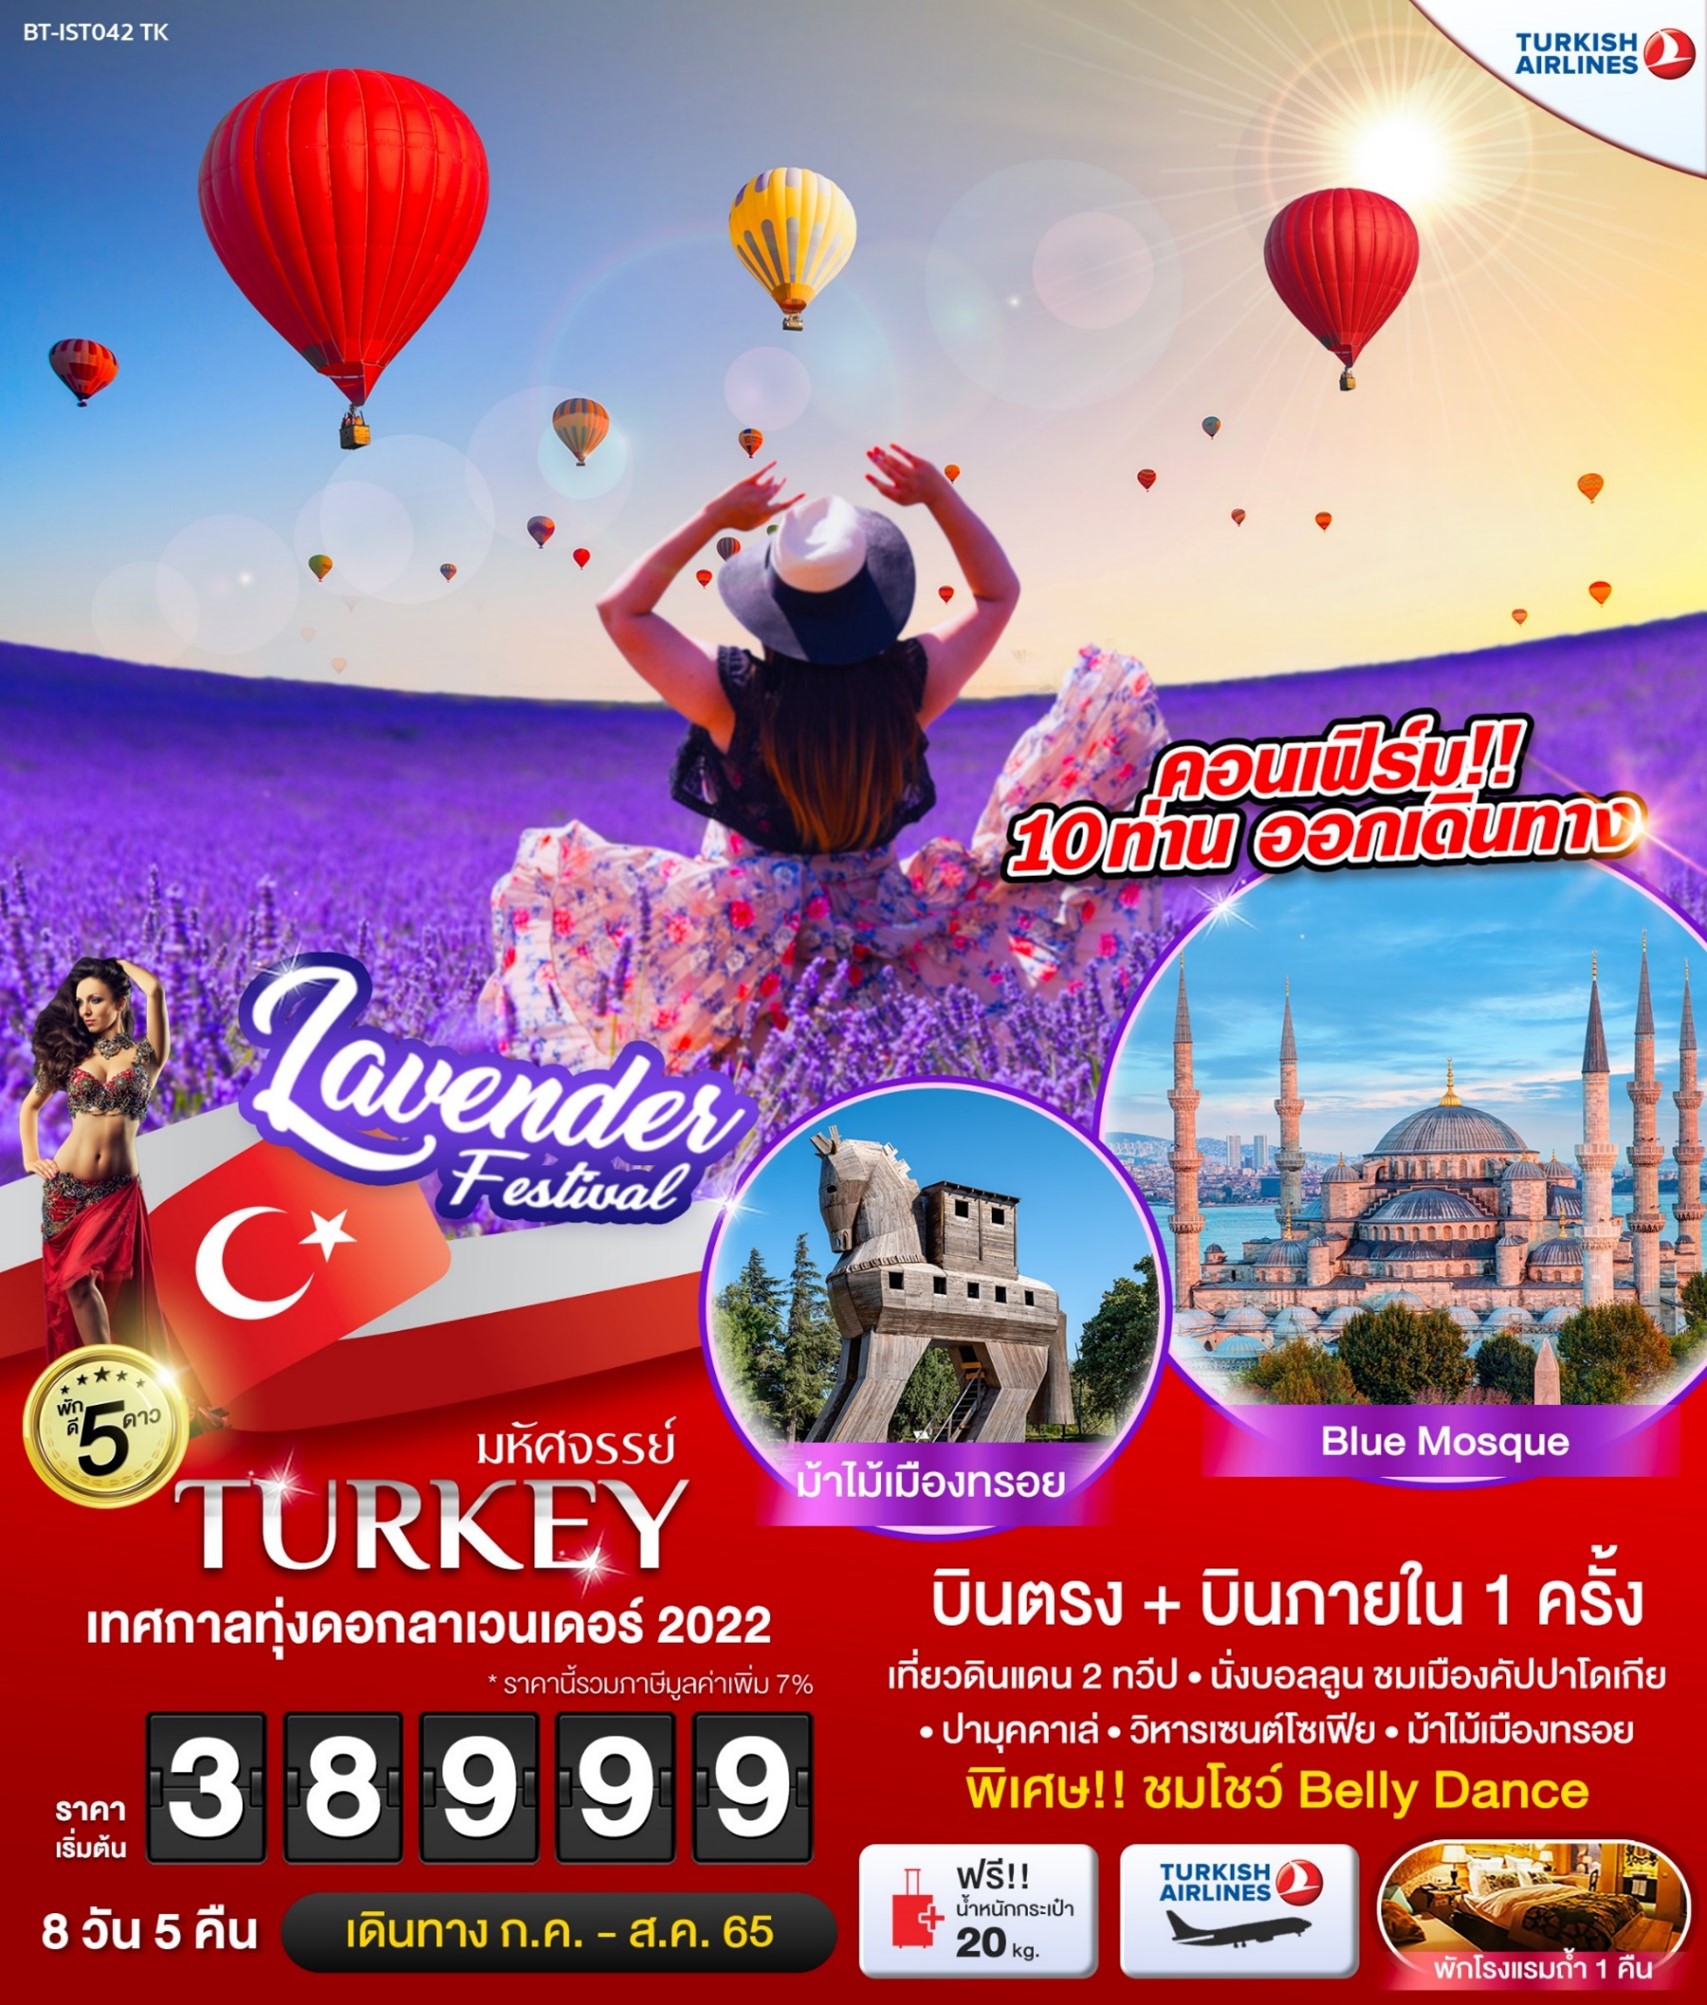 ทัวร์ตุรกี มหัศจรรย์ TURKEY เทศกาลทุ่งดอกลาเวนเดอร์ 2022